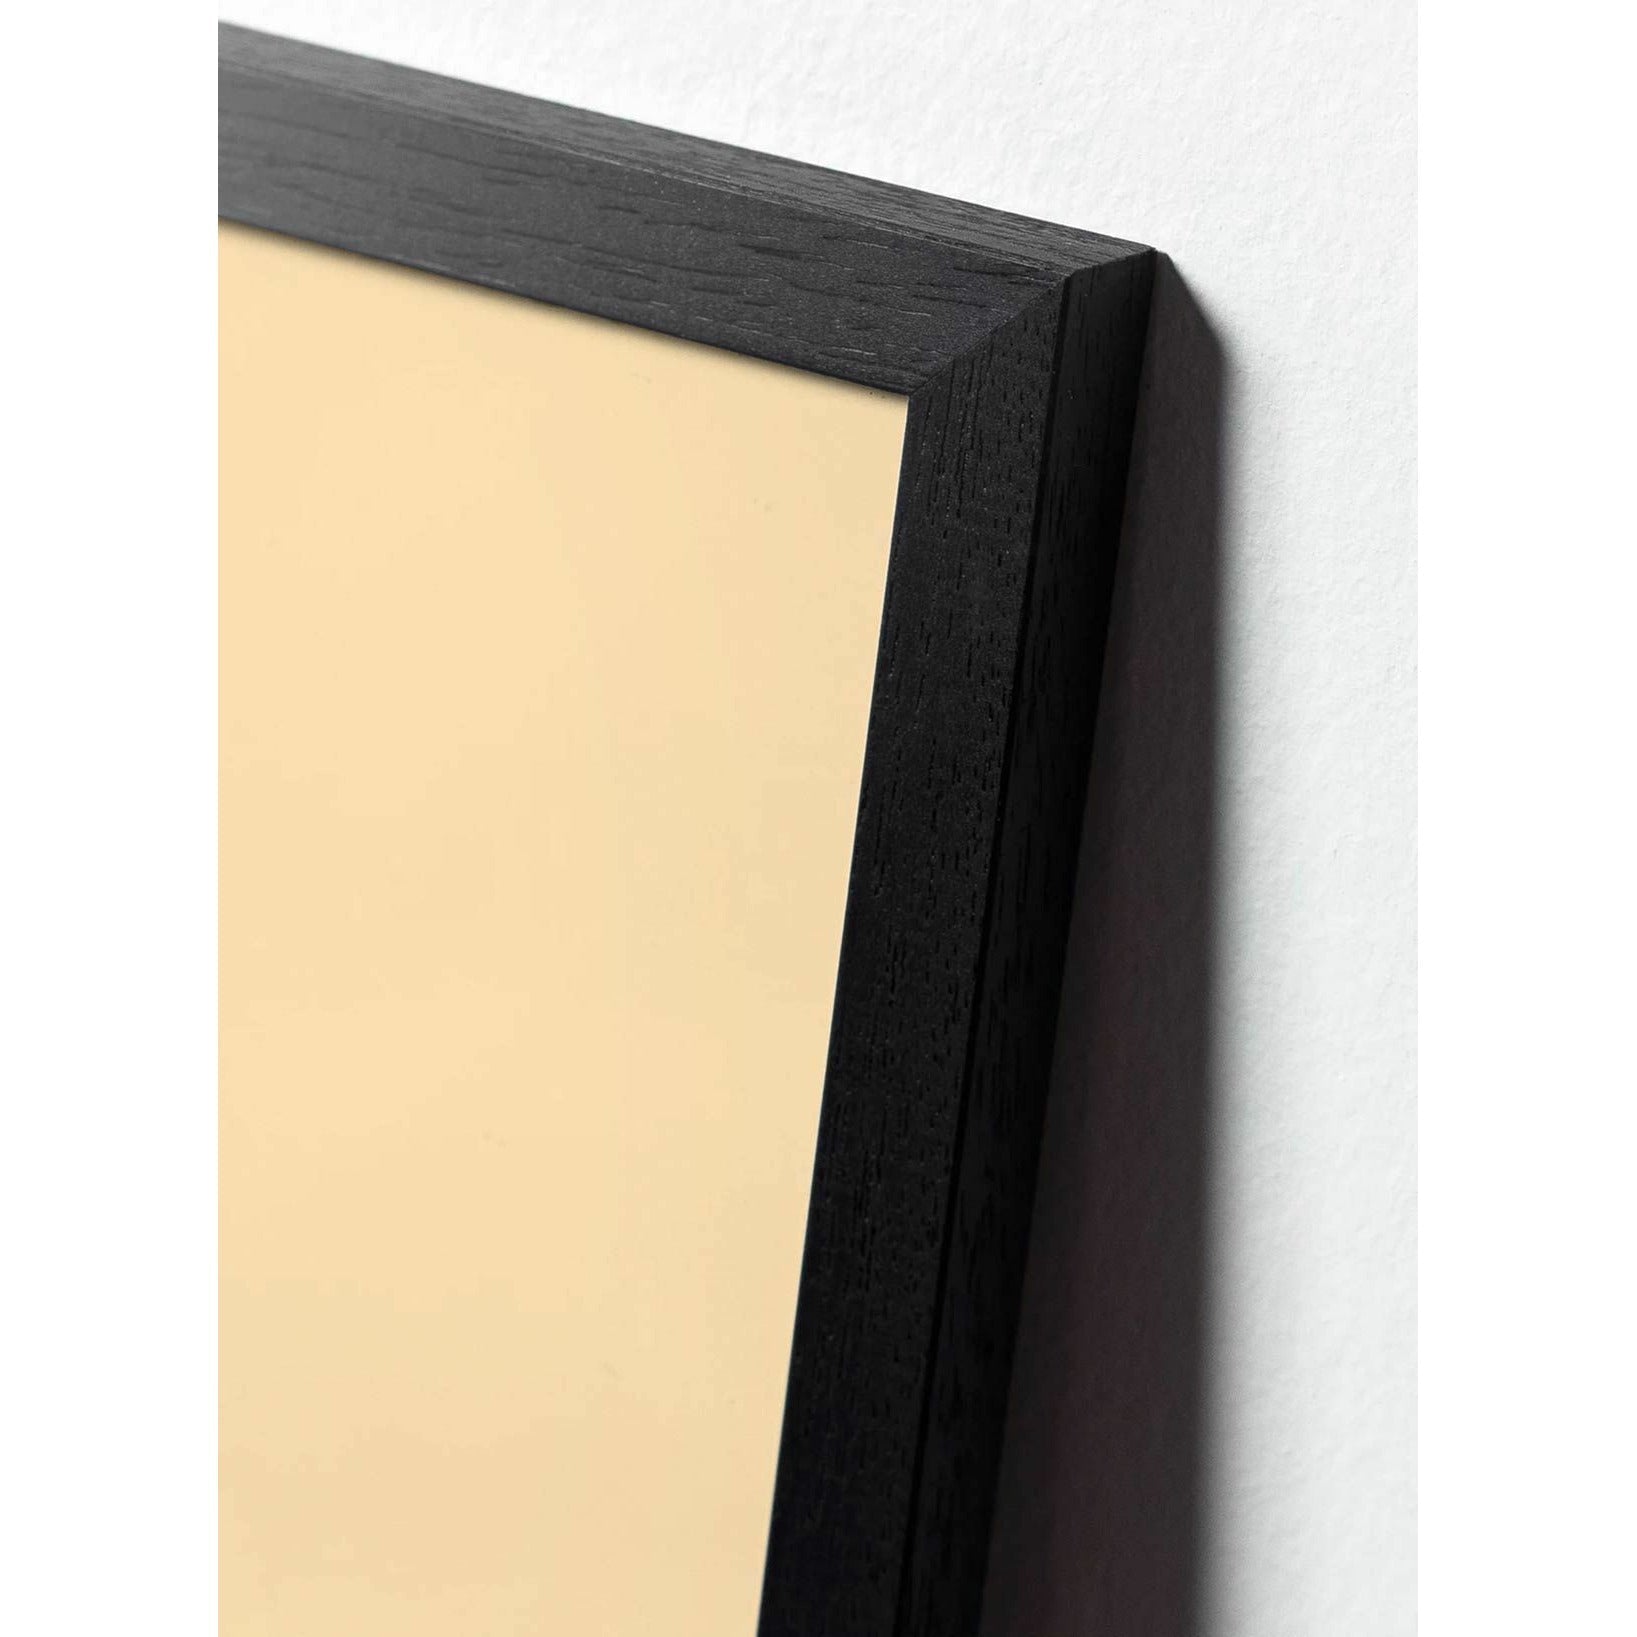 Plakát s labutí linky, rám v černém lakovaném dřevu 50x70 cm, bílé pozadí